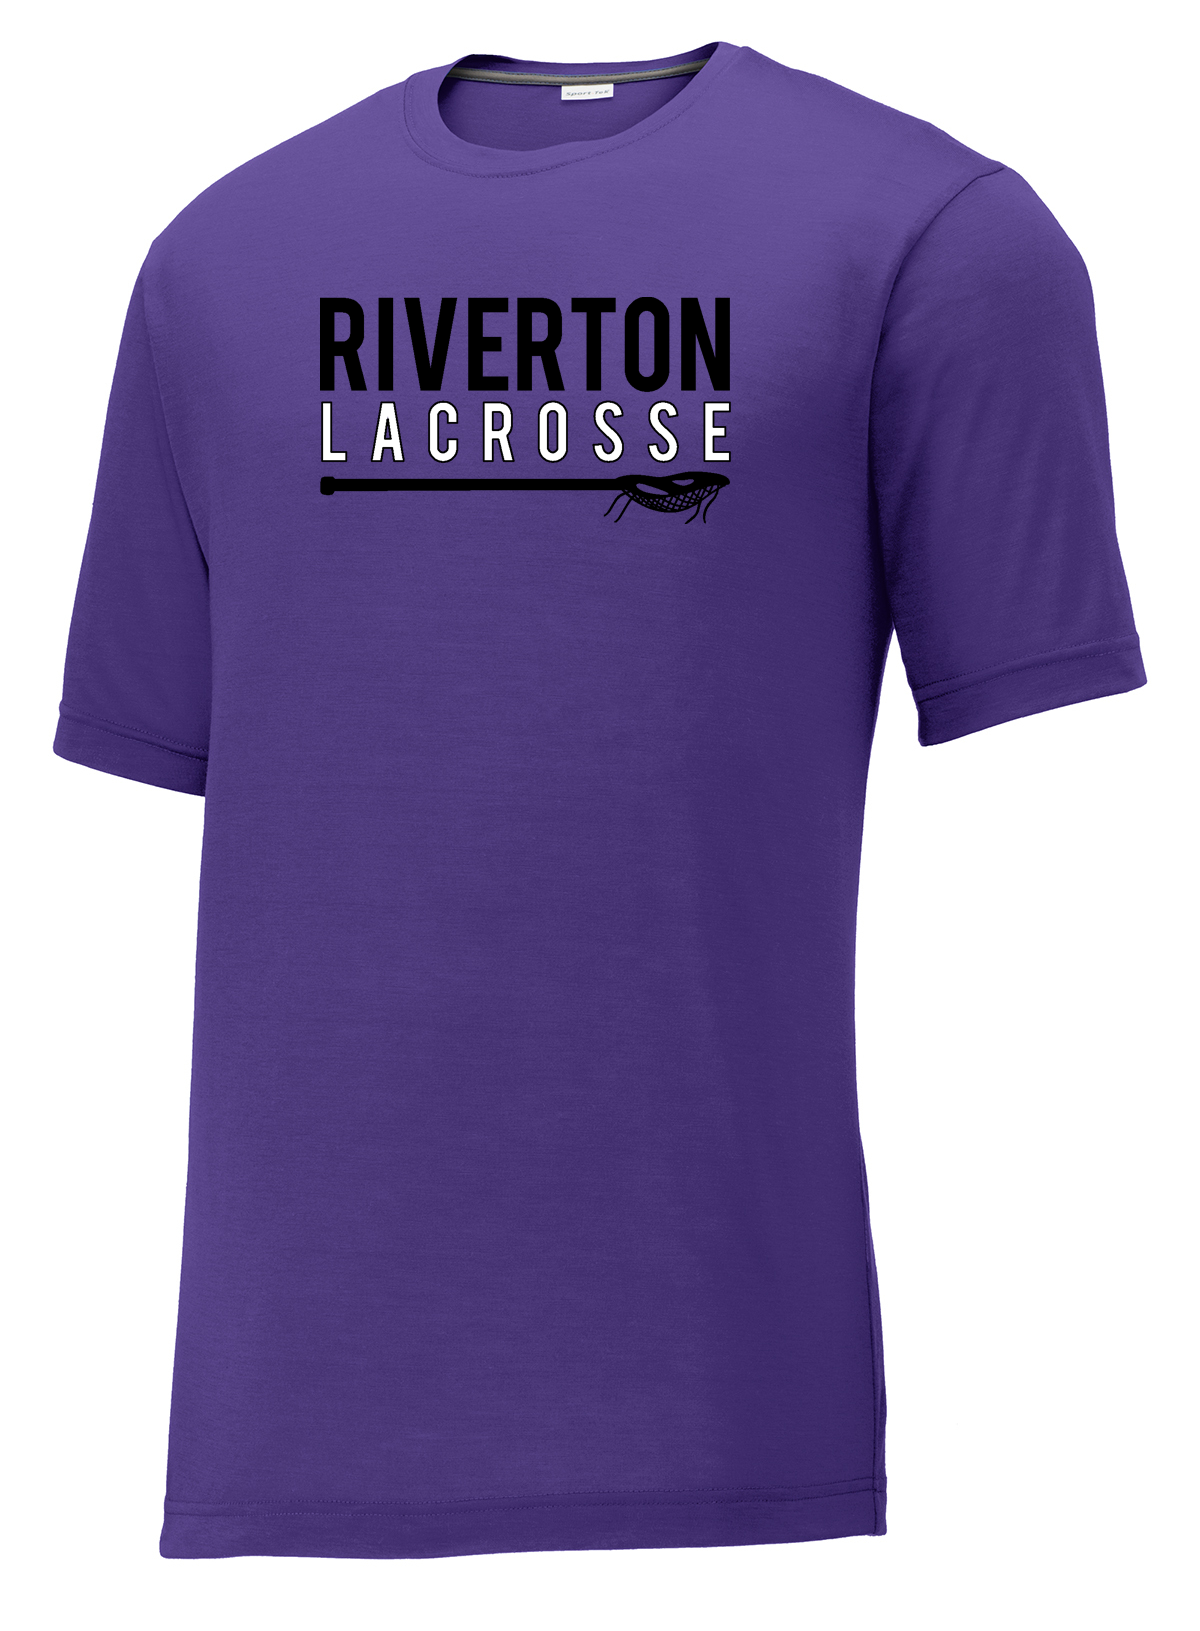 Riverton Lacrosse CottonTouch Performance T-Shirt